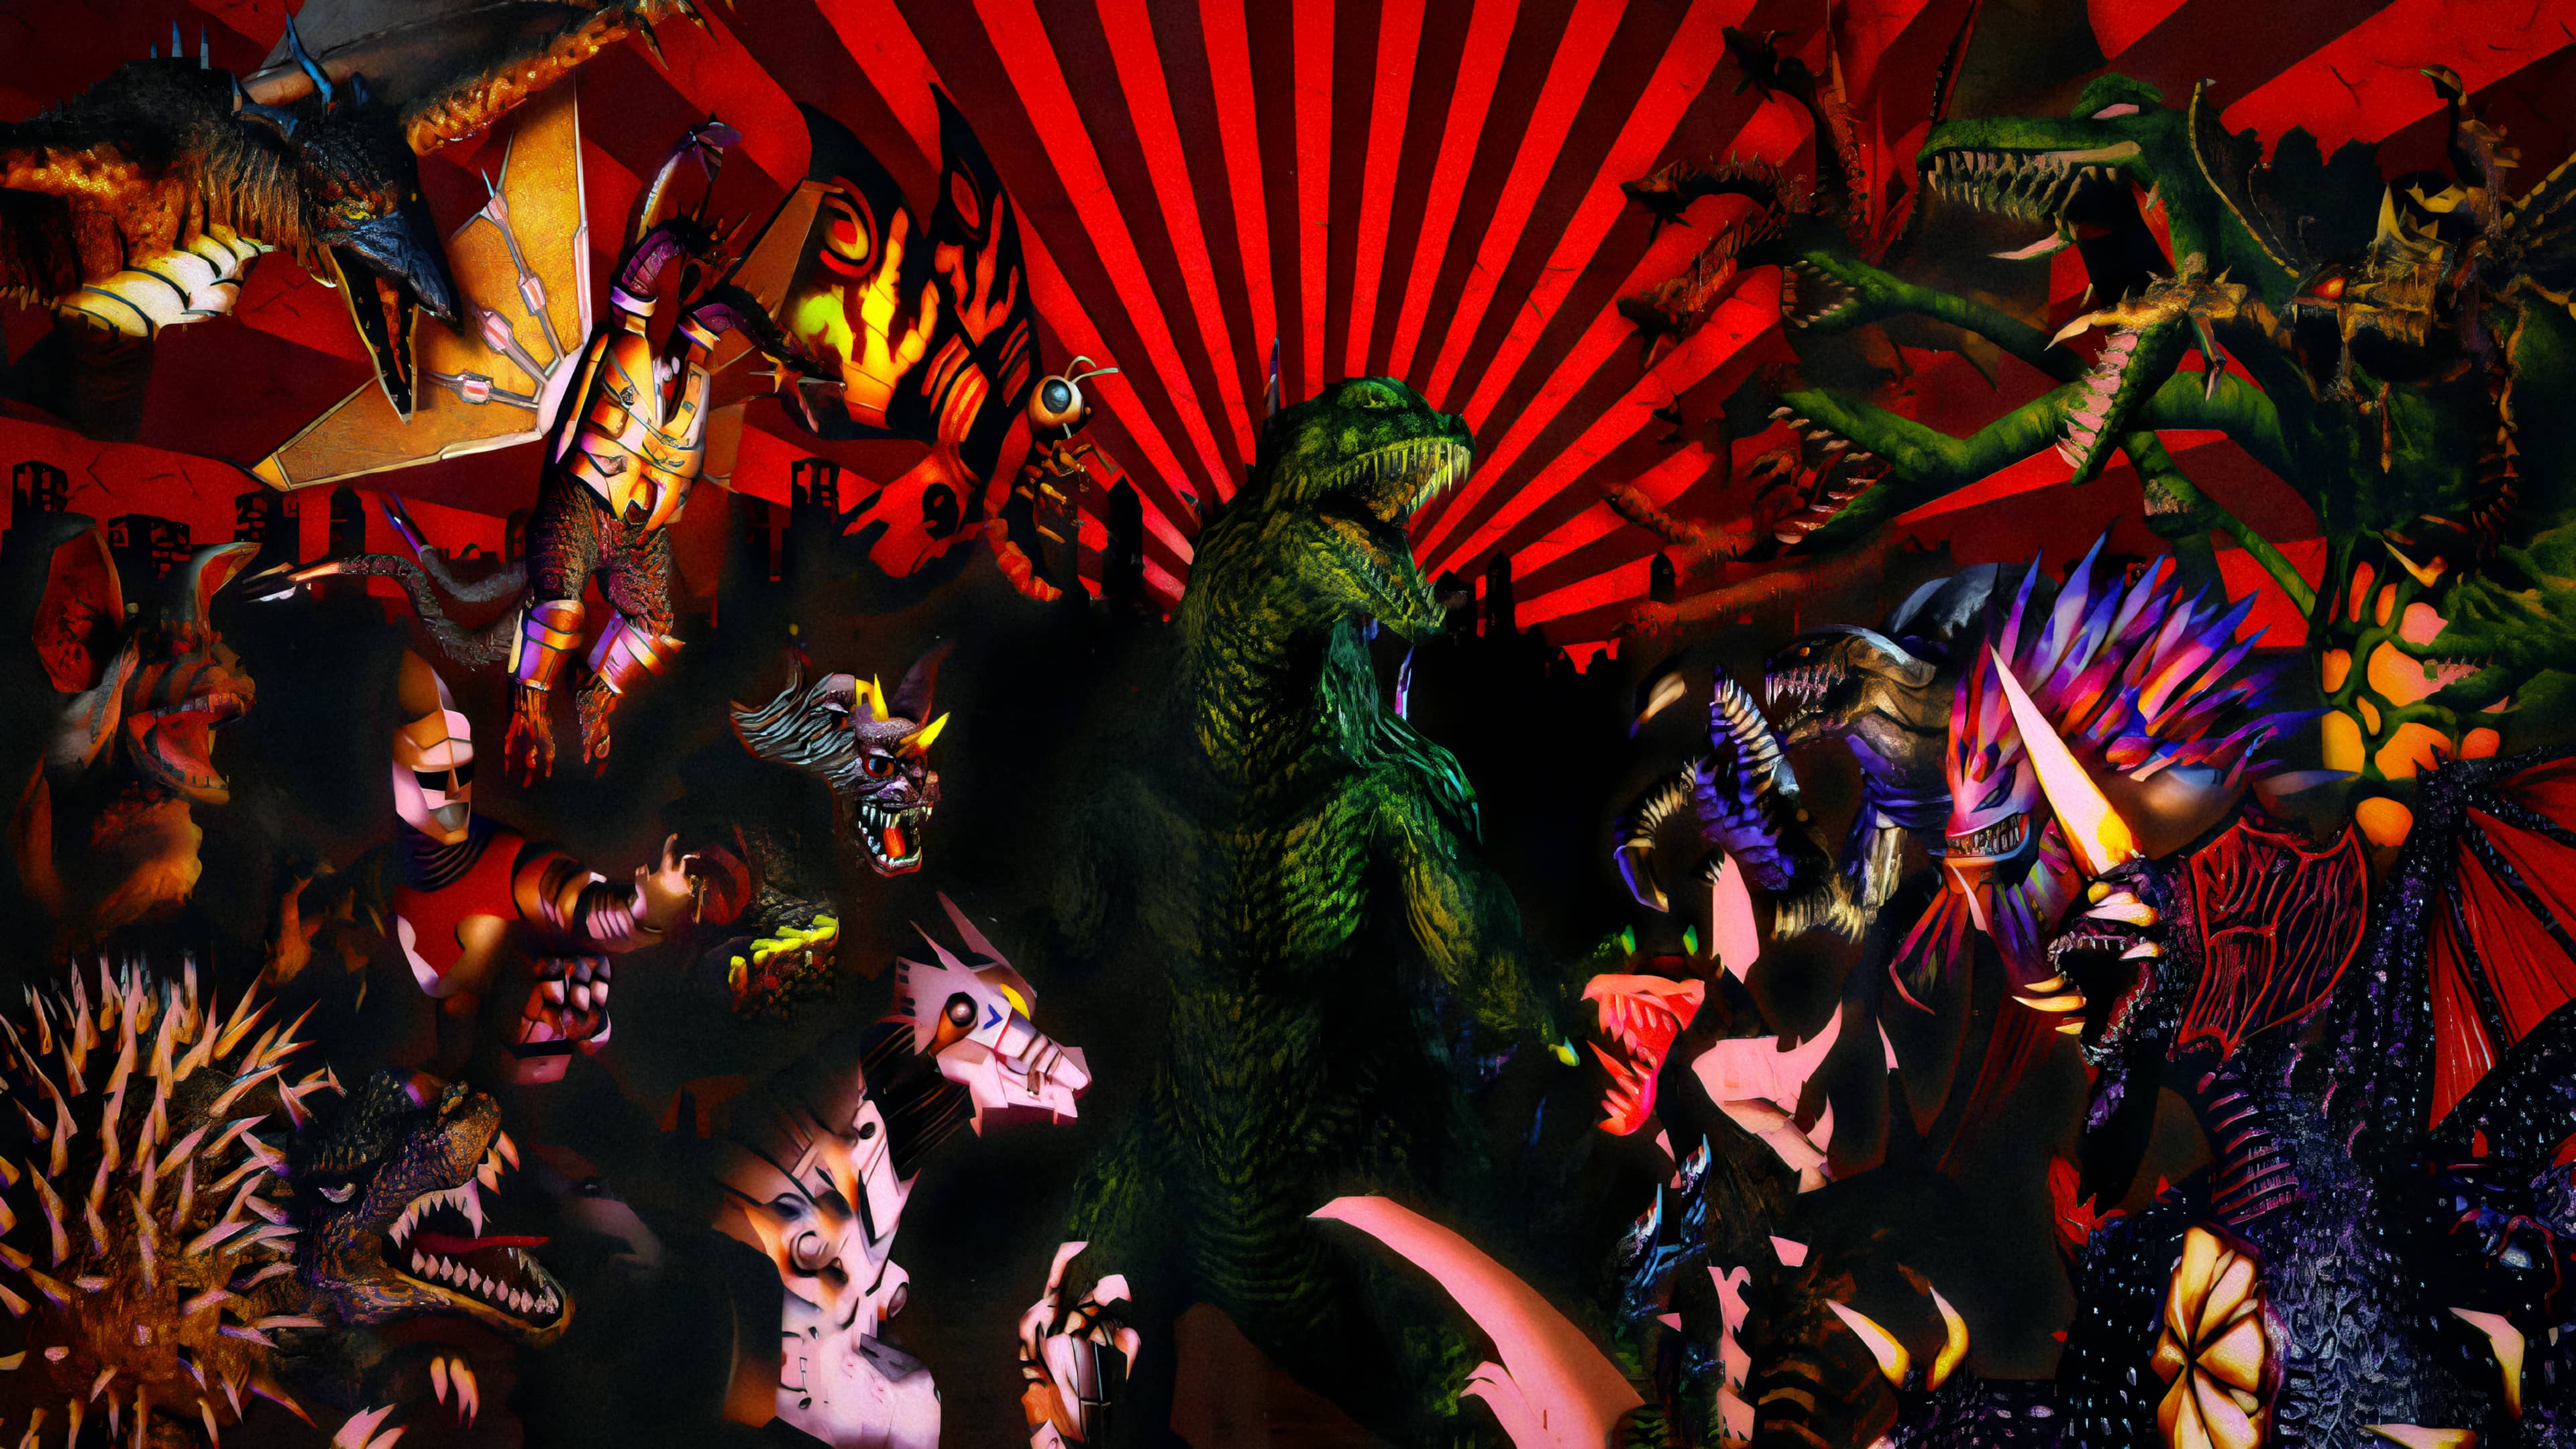 Godzilla Unleashed: Double Smash